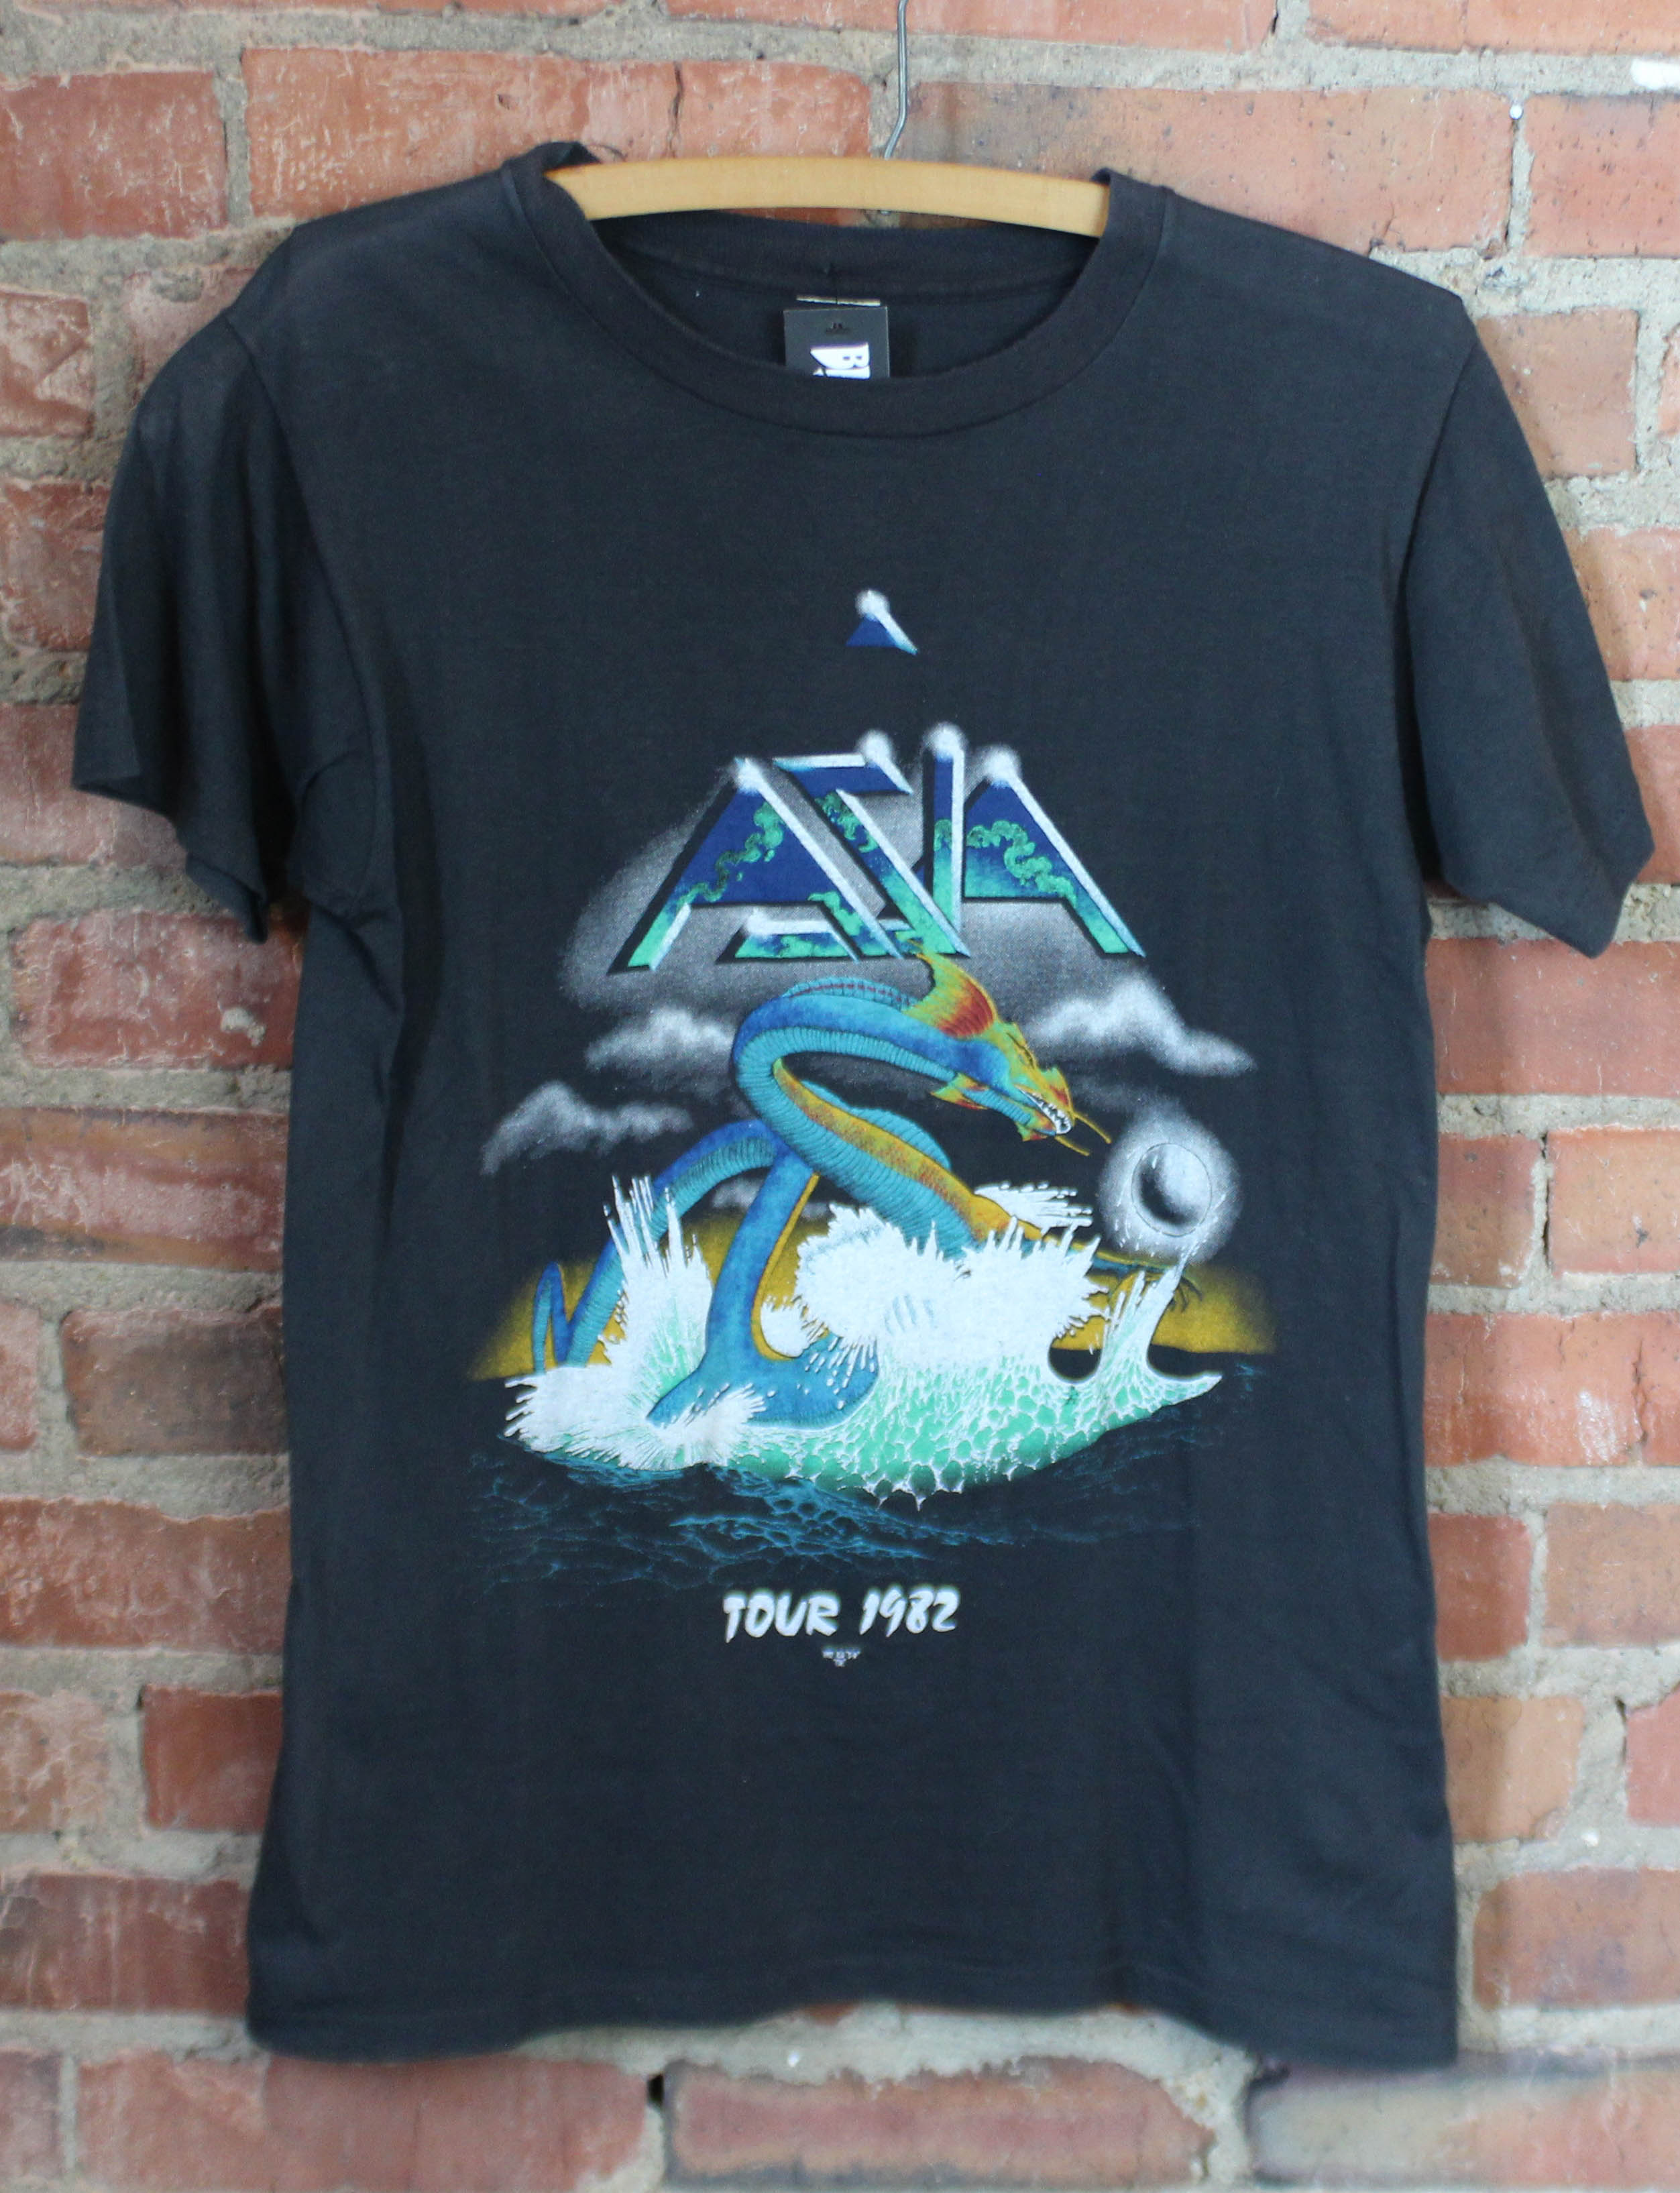 Vintage Asia Concert T Shirt Tour 1982 Small – Black Shag Vintage